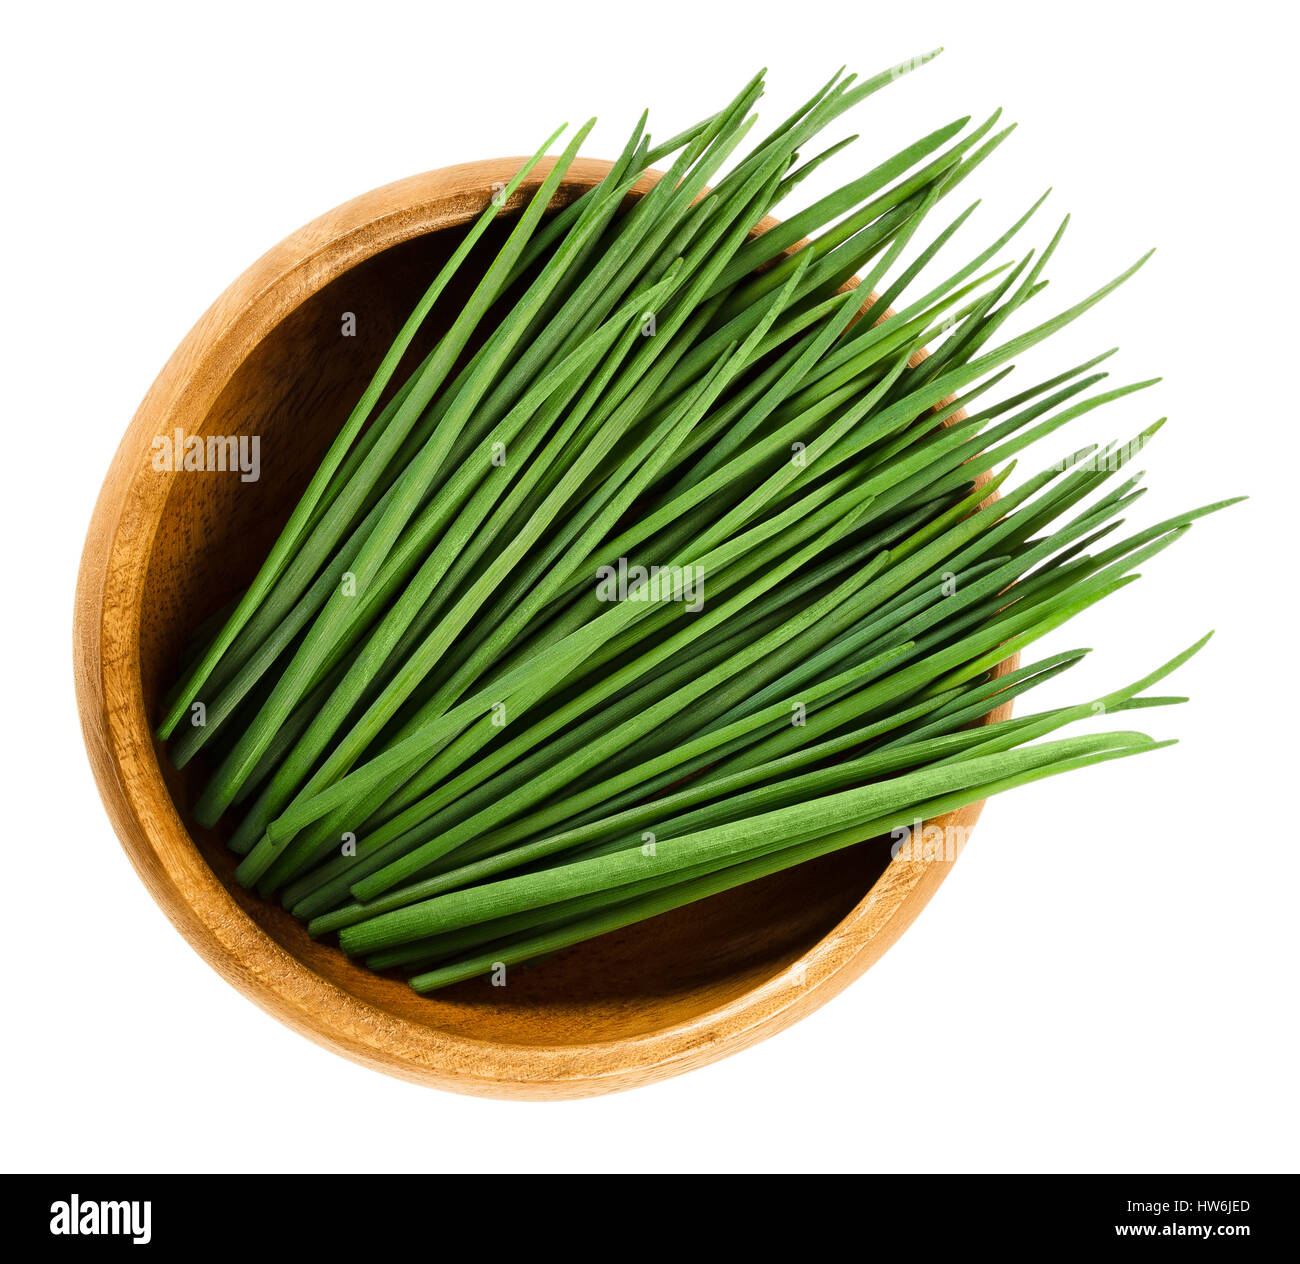 Schnittlauch-Scapes in Holzschale. Frische grüne essbare Kräuter von Allium Schoenoprasum, als Zutat für Suppen, Fisch und Kartoffeln verwendet. Stockfoto